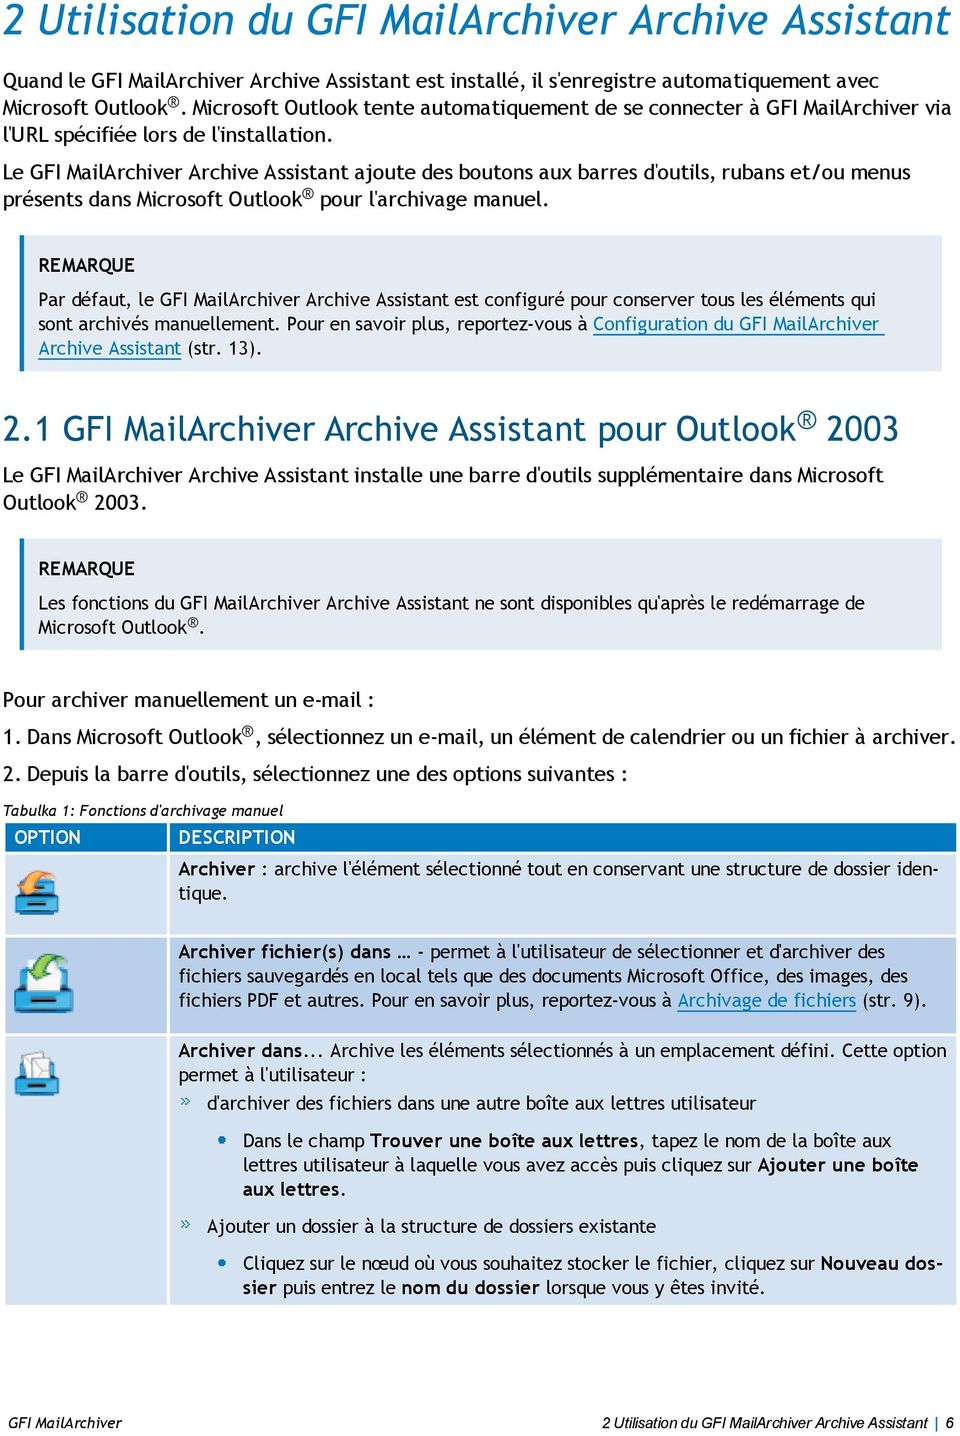 Le GFI MailArchiver Archive Assistant ajoute des boutons aux barres d'outils, rubans et/ou menus présents dans Microsoft Outlook pour l'archivage manuel.